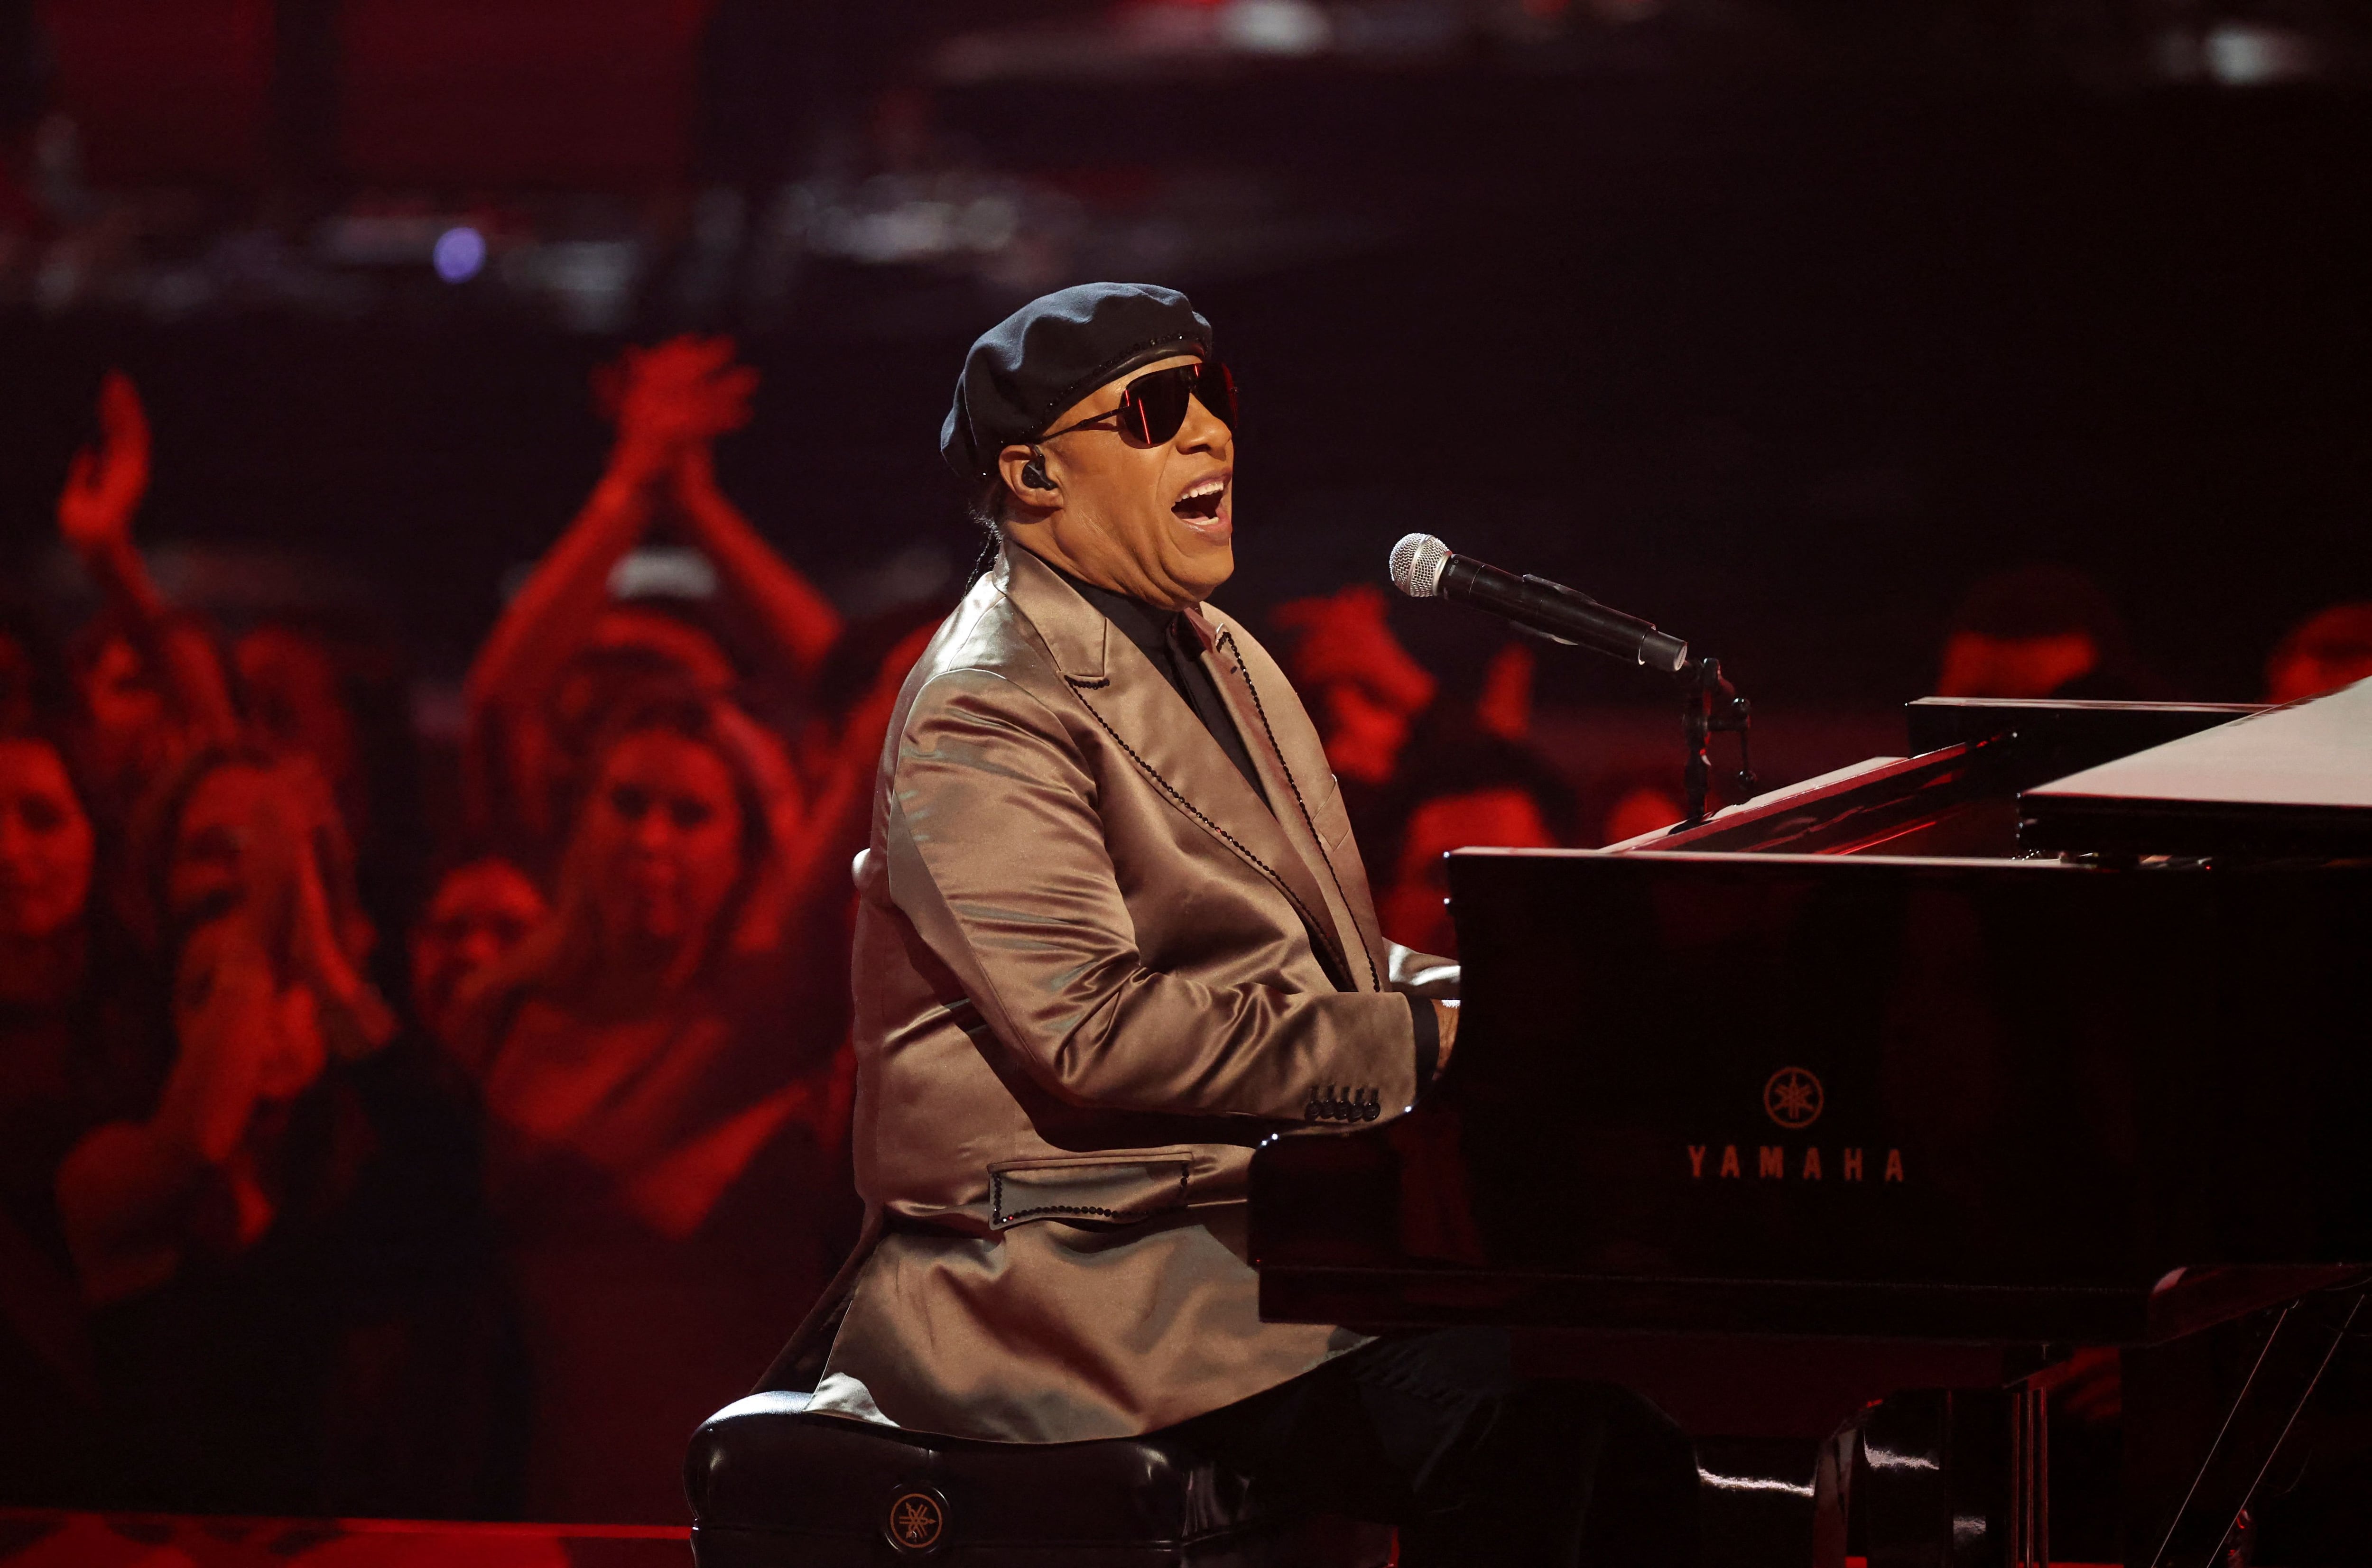 Stevie Wonder actúa en el escenario durante los Premios de la Música Americana 2022, en el Teatro Microsoft de Los Ángeles, California, EE.UU., el 20 de noviembre de 2022 (REUTERS/Mario Anzuoni)